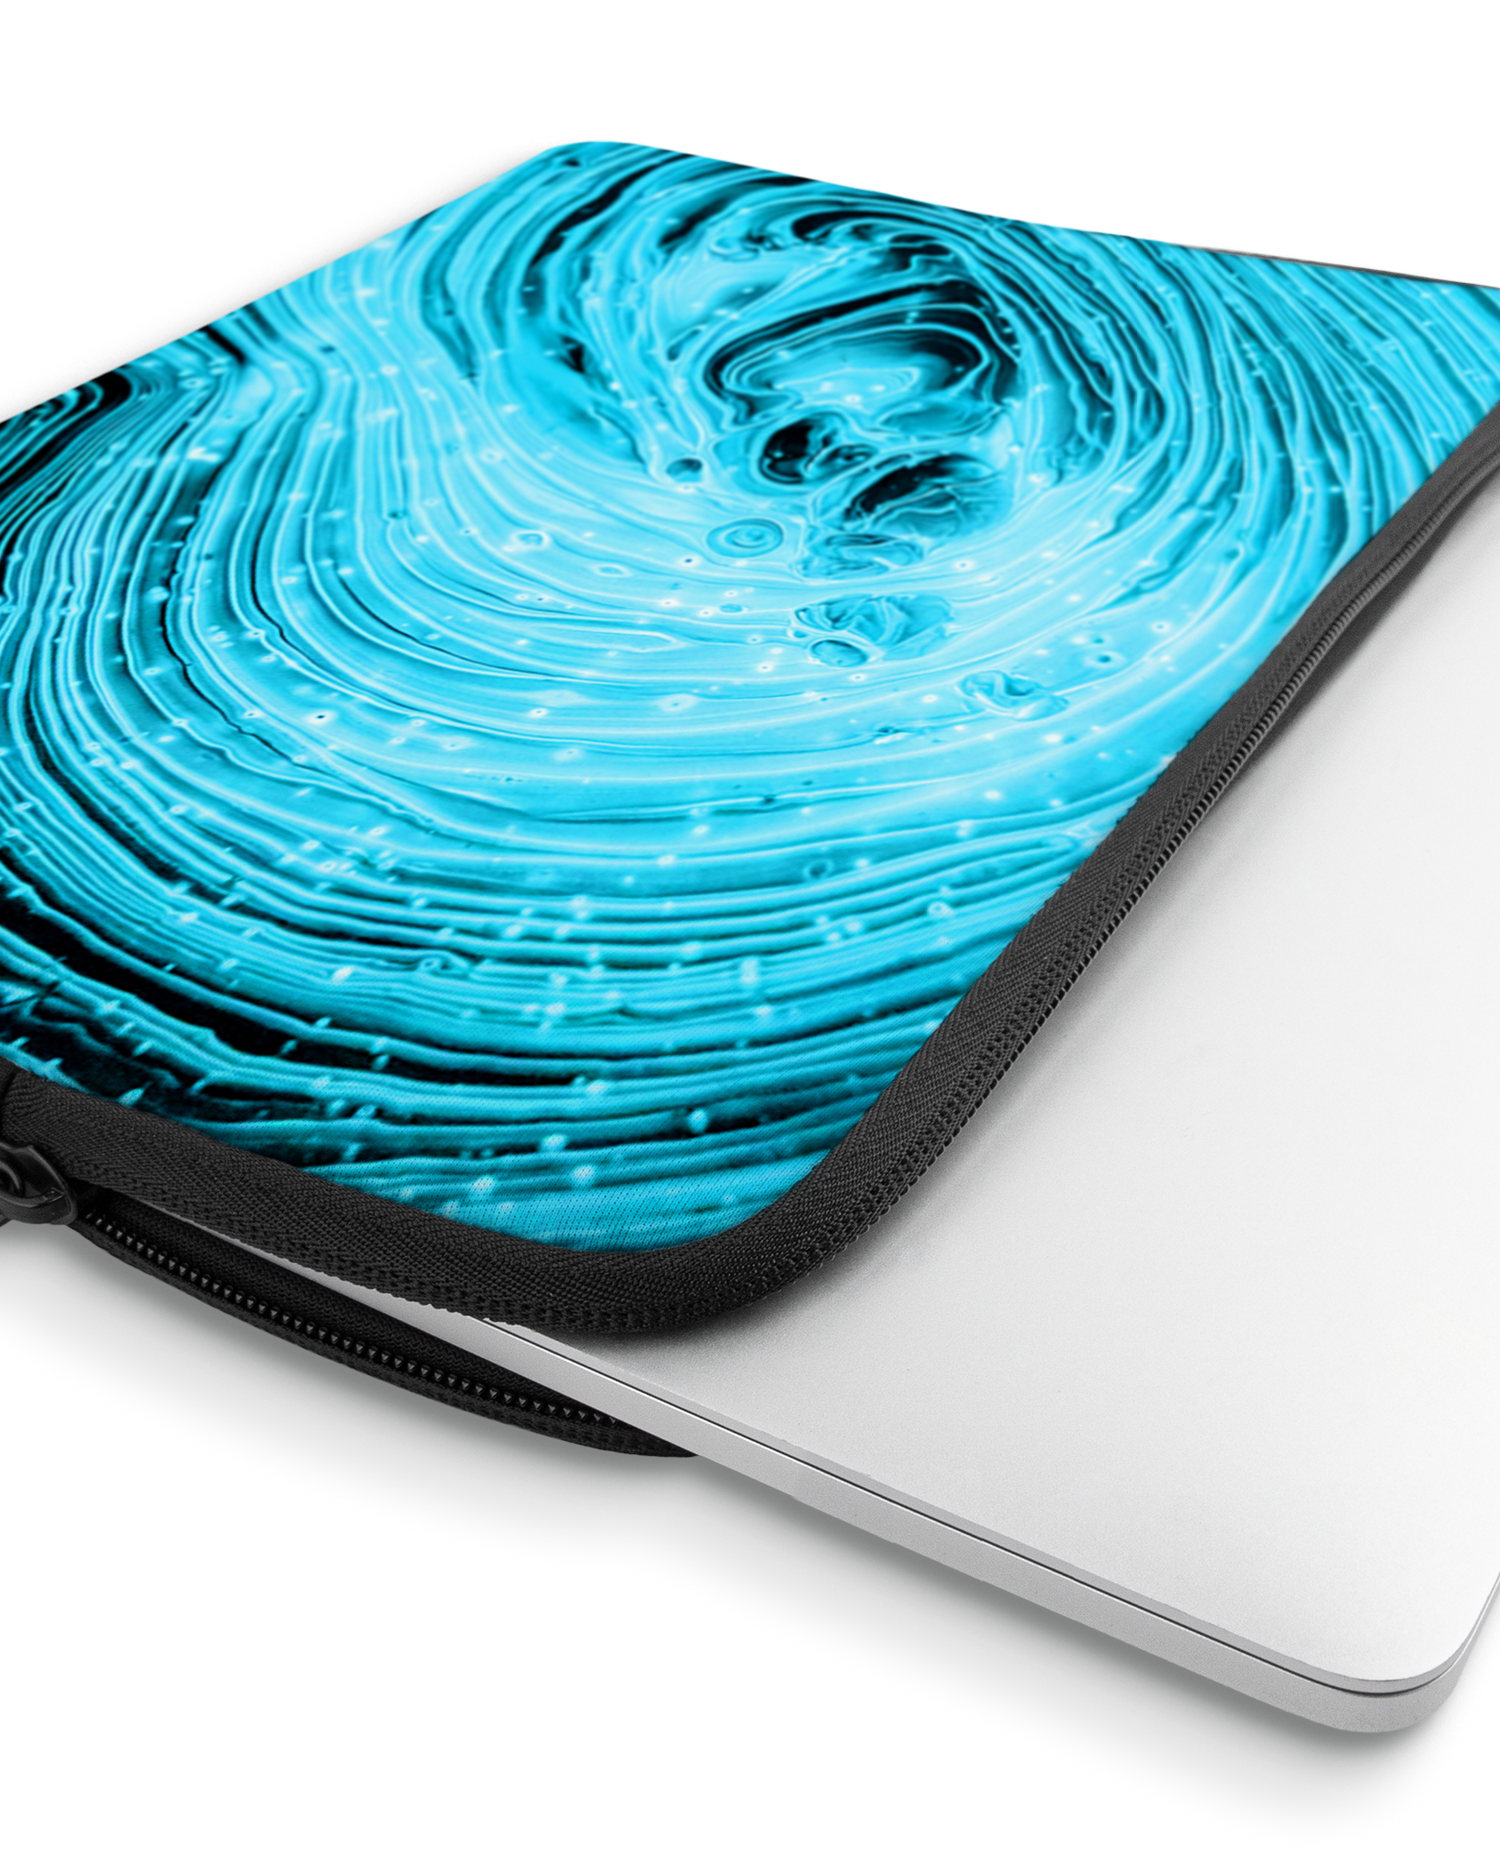 Turquoise Ripples Laptophülle 13 Zoll mit Gerät im Inneren